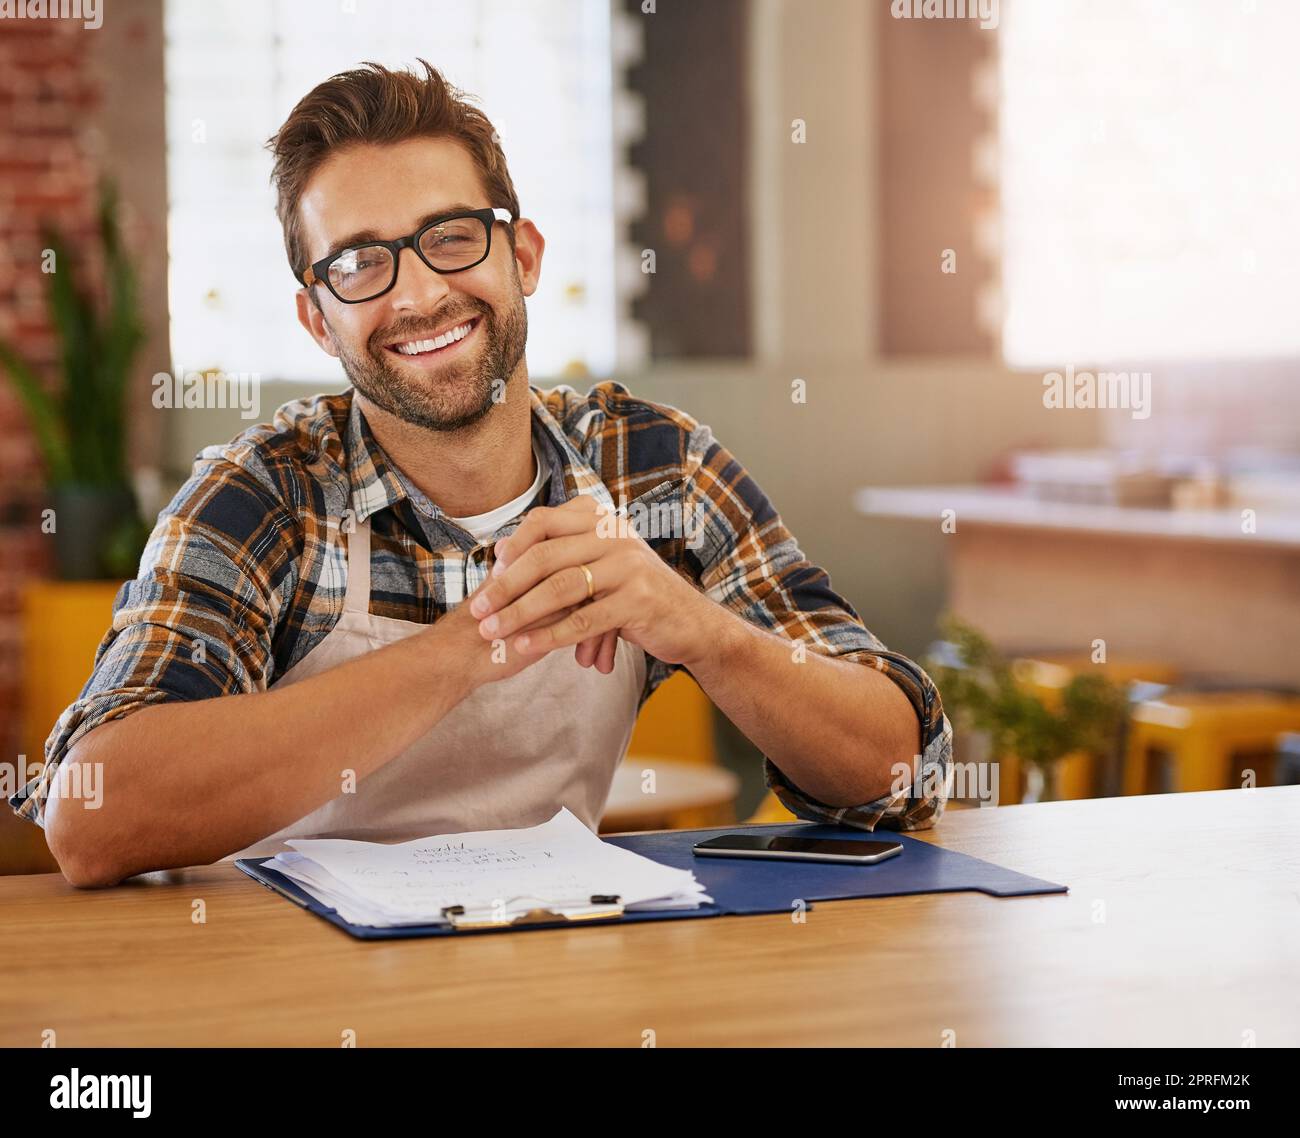 Einige Zeit im Coffee Shop zu verbringen. Porträt eines glücklichen jungen Geschäftseigentümers, der an einem Tisch in seinem Café Admin macht. Stockfoto